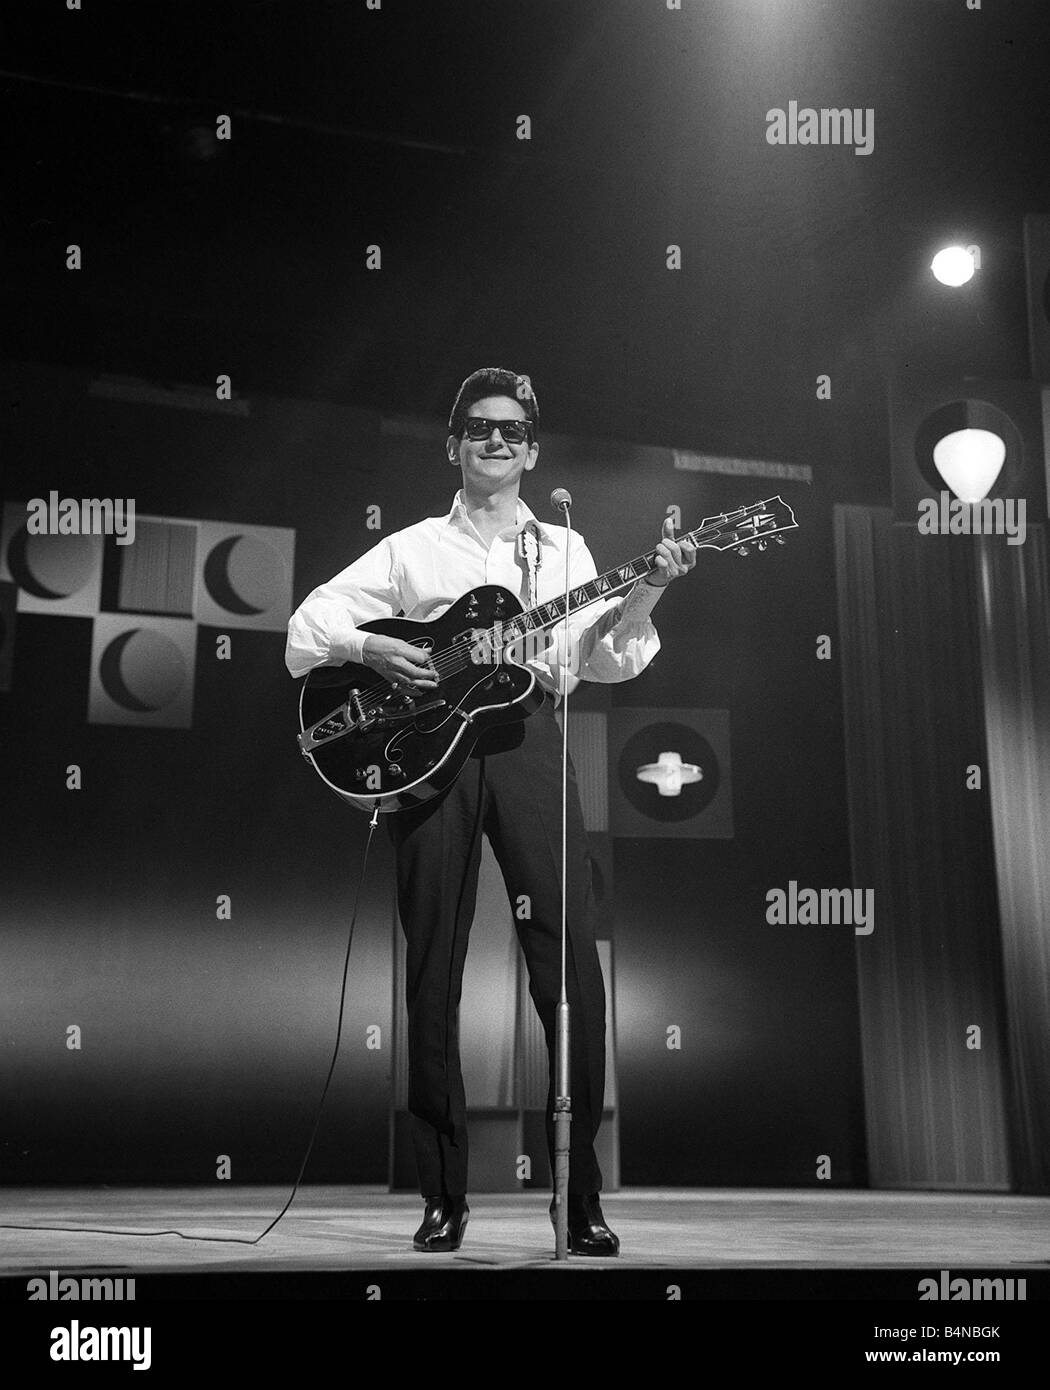 Roy Orbison-Pop-Sängerin März 1965 am Sonntagabend um das London Palladium  spielen Gitarre und eine Sonnenbrille Stockfotografie - Alamy